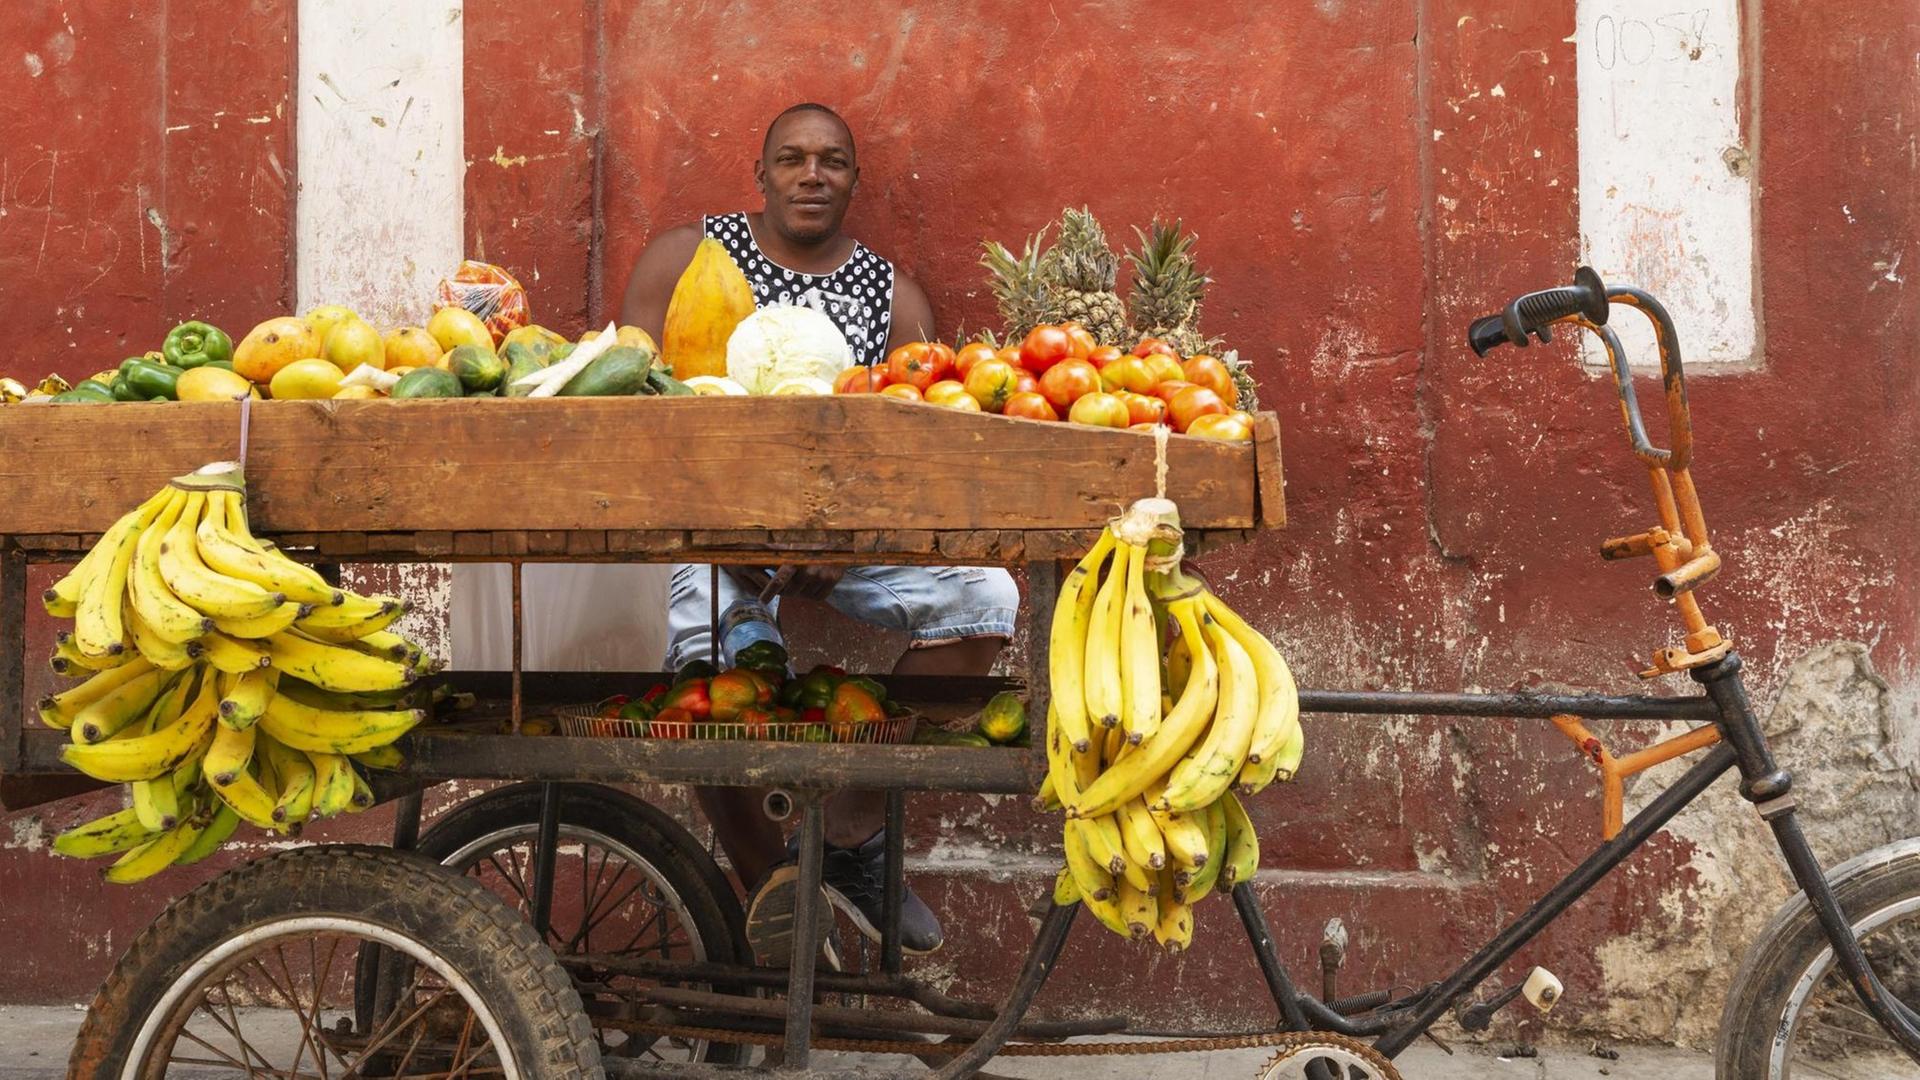 Mobiler Marktstand auf Kuba, der von einem Fahrrad bewegt werden kann. Im Vordergrund gelbe Bananen, hinter dem Stand sitzt der Händler.